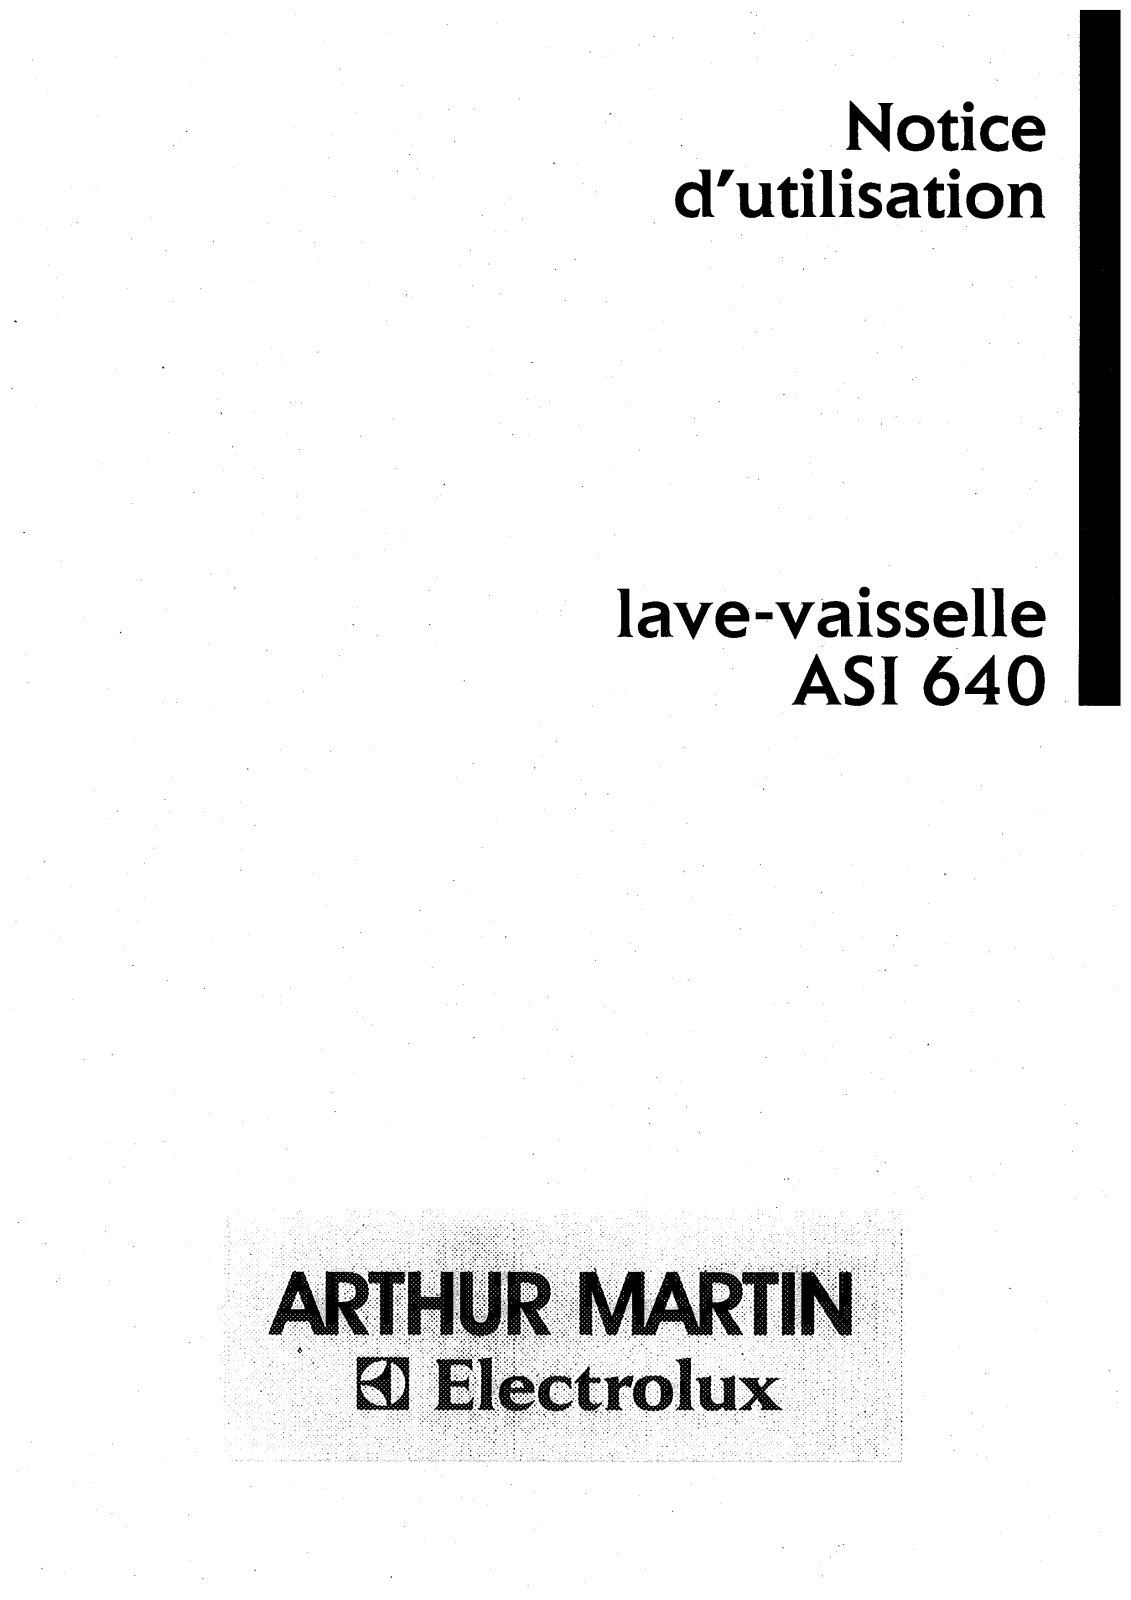 Arthur martin ASI640 User Manual